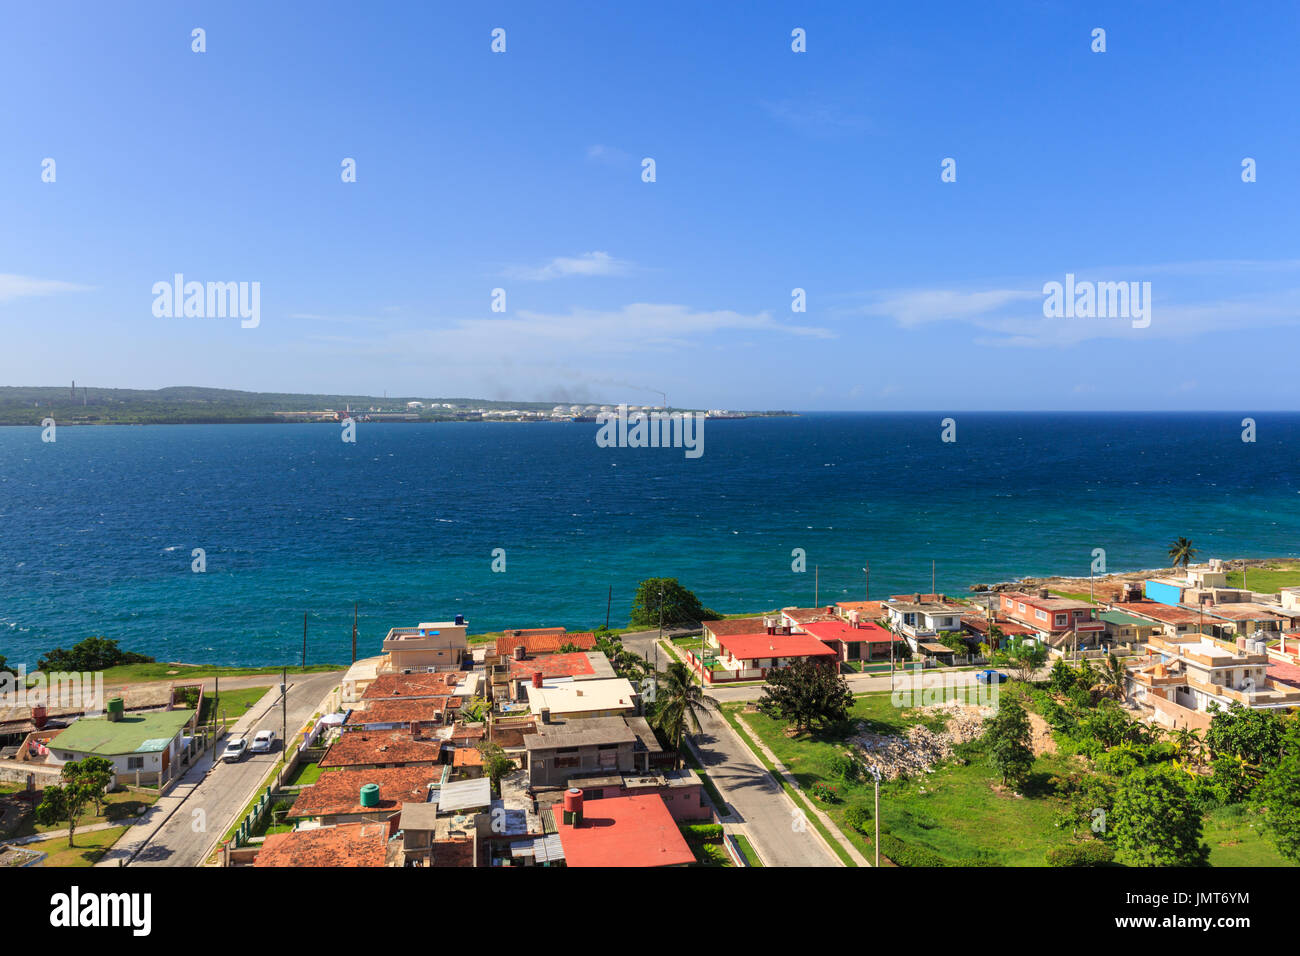 Vue d'ensemble des maisons à la mer, à Bahia de Matanzas, la baie de Matanzas, Cuba Banque D'Images